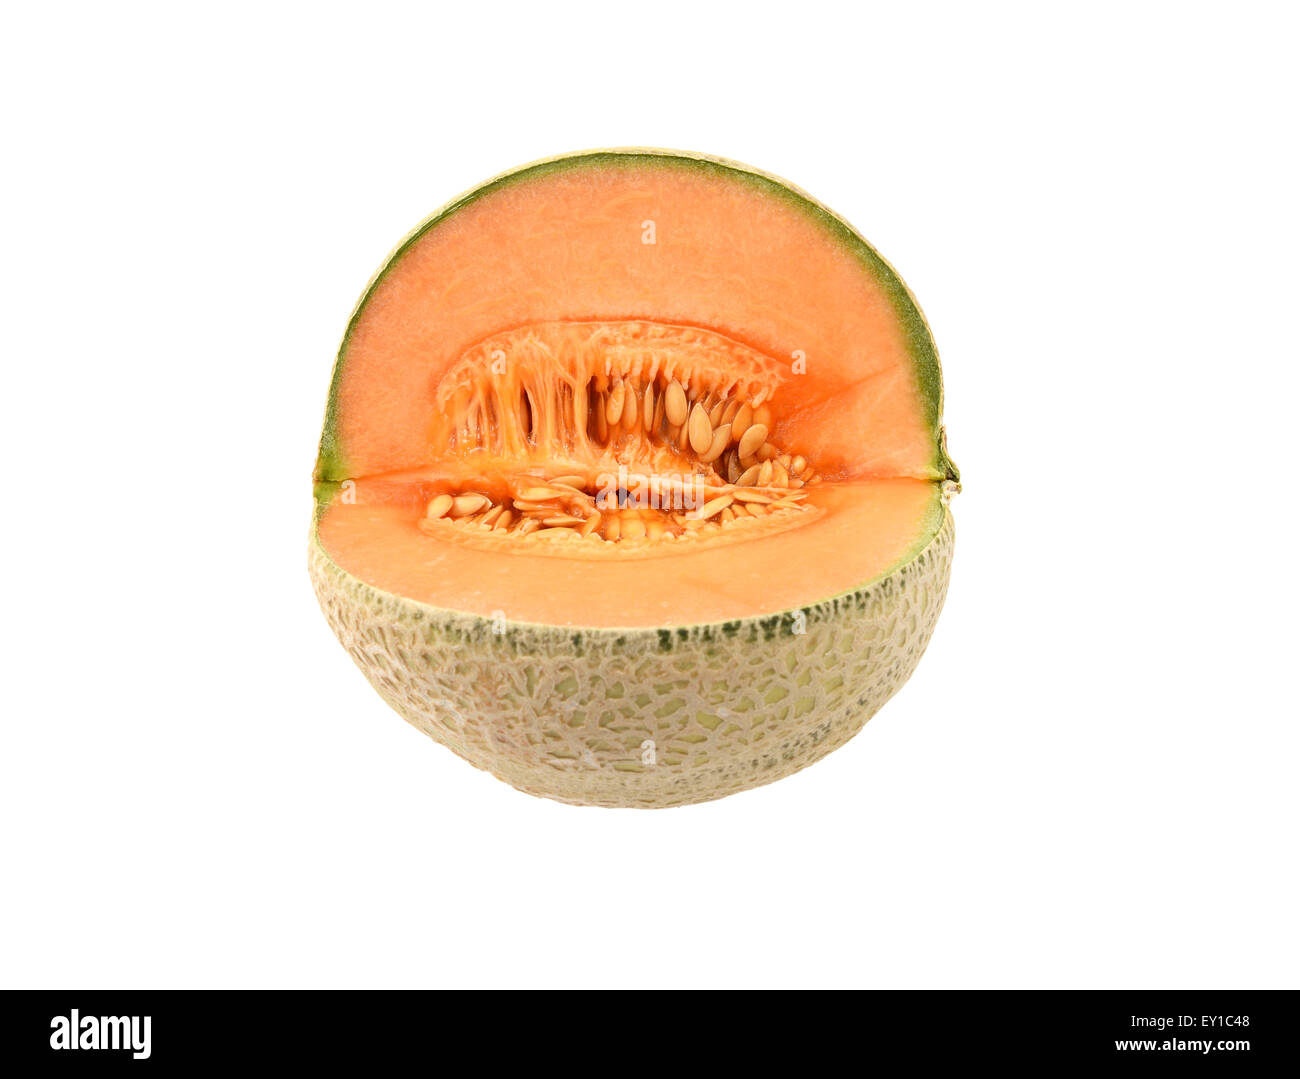 Frische Melone Melone aufgeschnitten, orange Fruchtfleisch und viele klebrige Samen zeigen Stockfoto